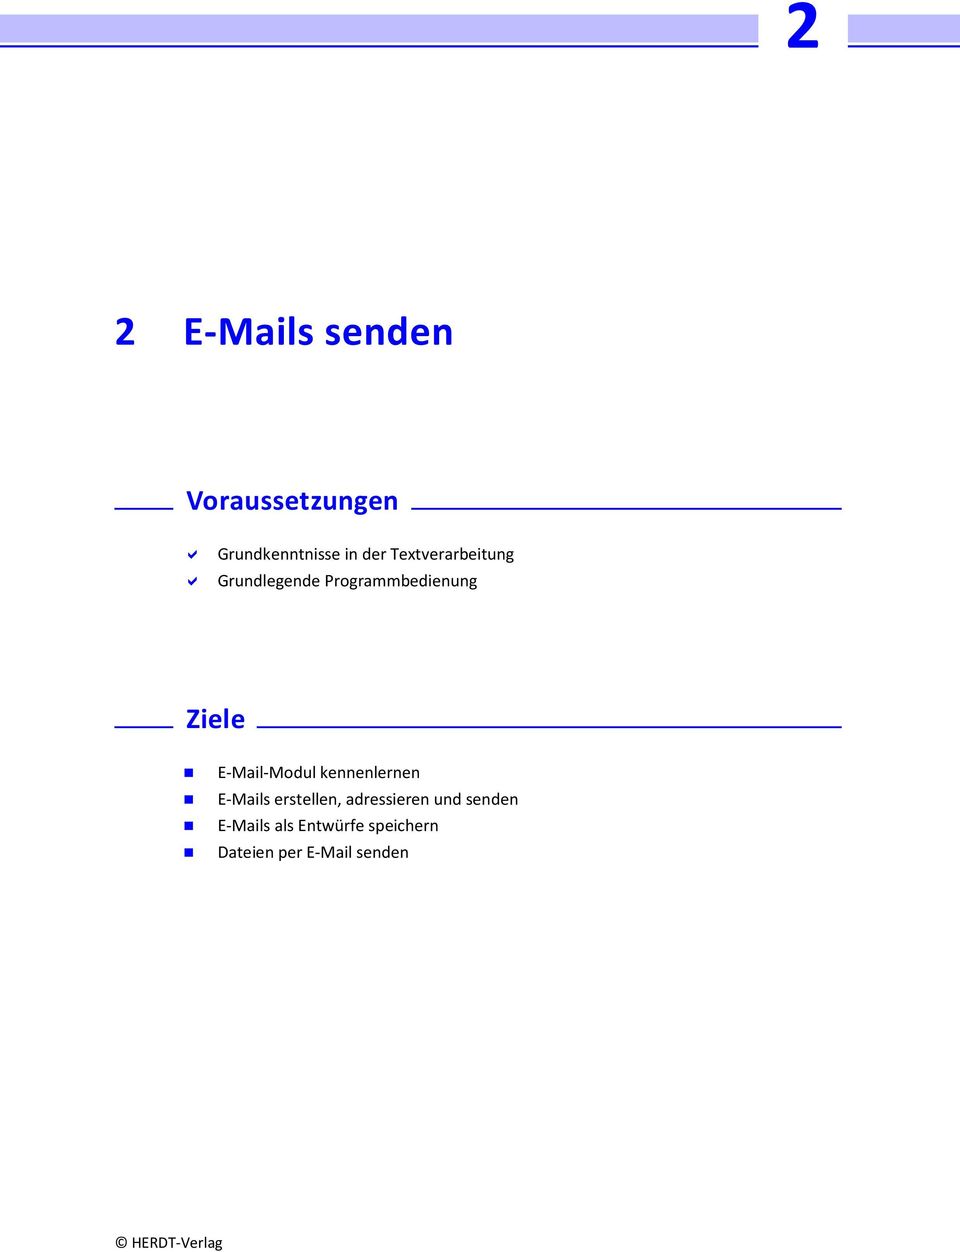 E-Mail-Modul kennenlernen E-Mails erstellen, adressieren und